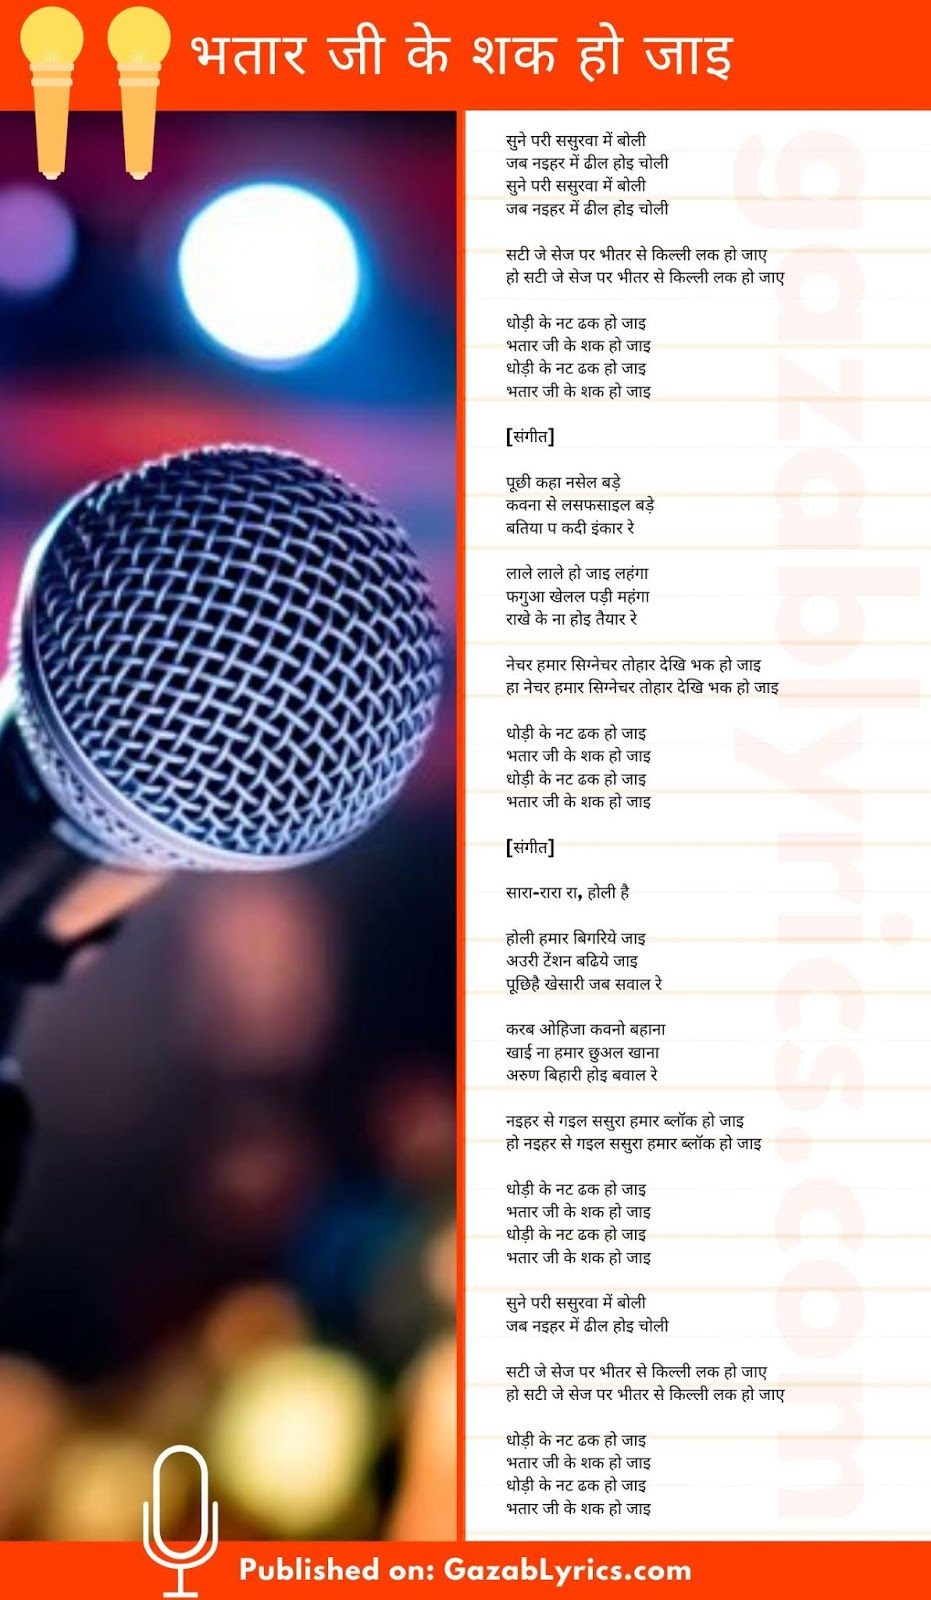 Bhatar Ji Ke Sak Ho Jai song lyrics image